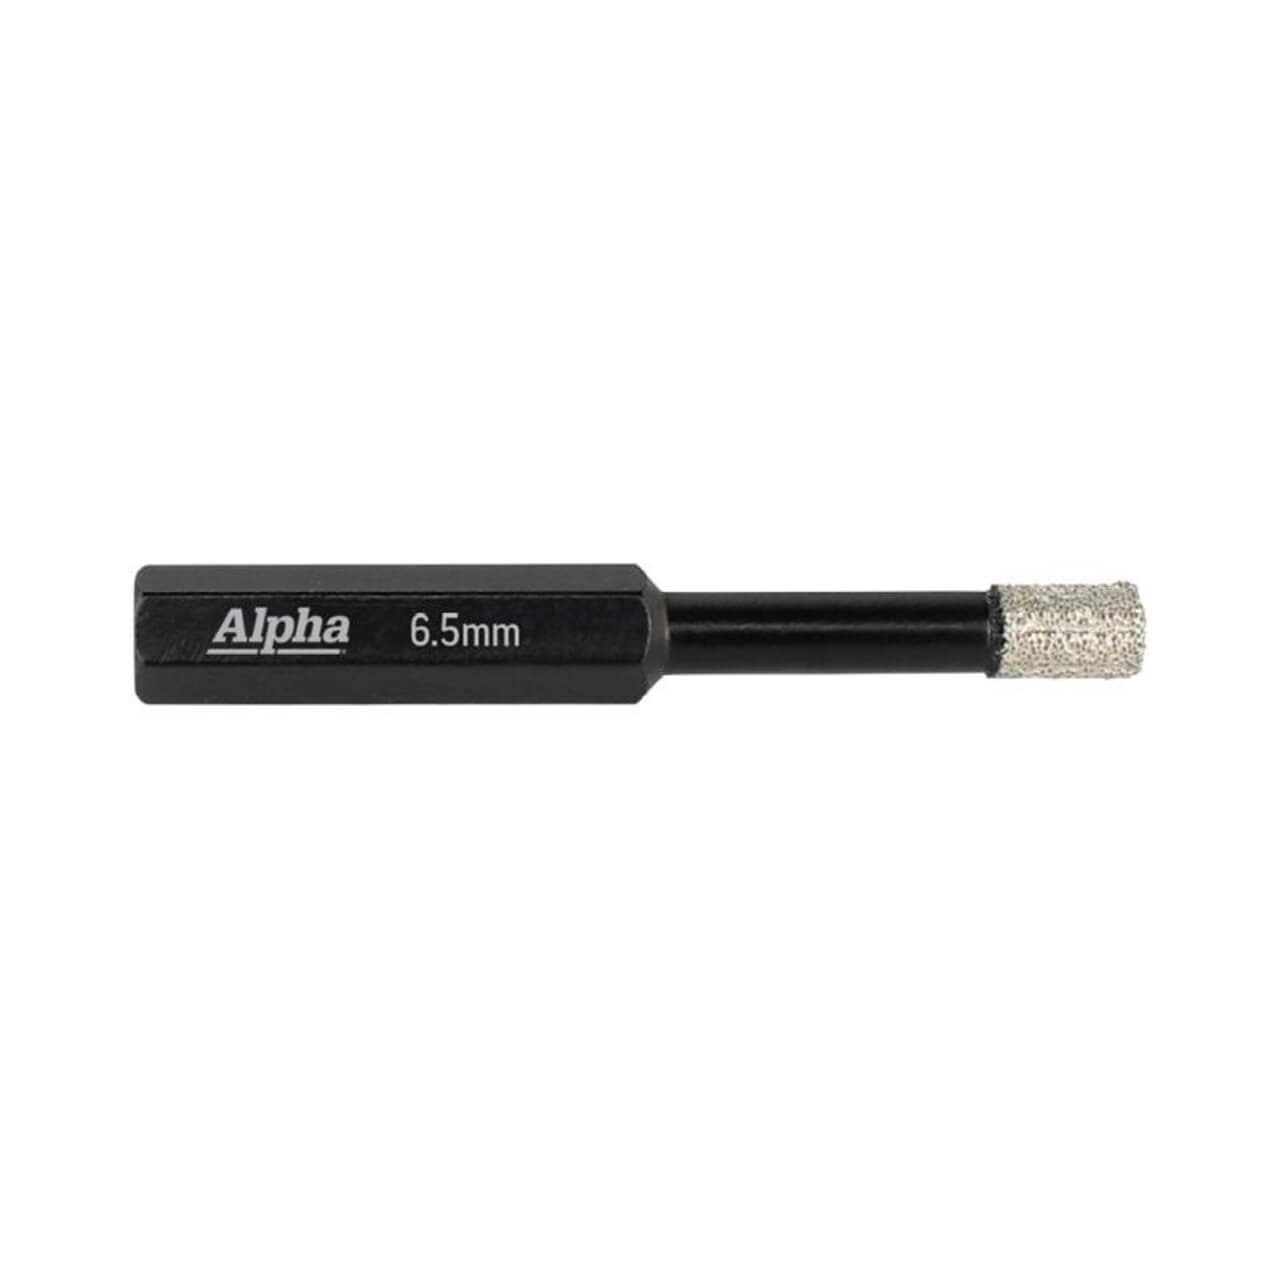 Alpha 6.5mm Wax Filled Diamond Core Bit